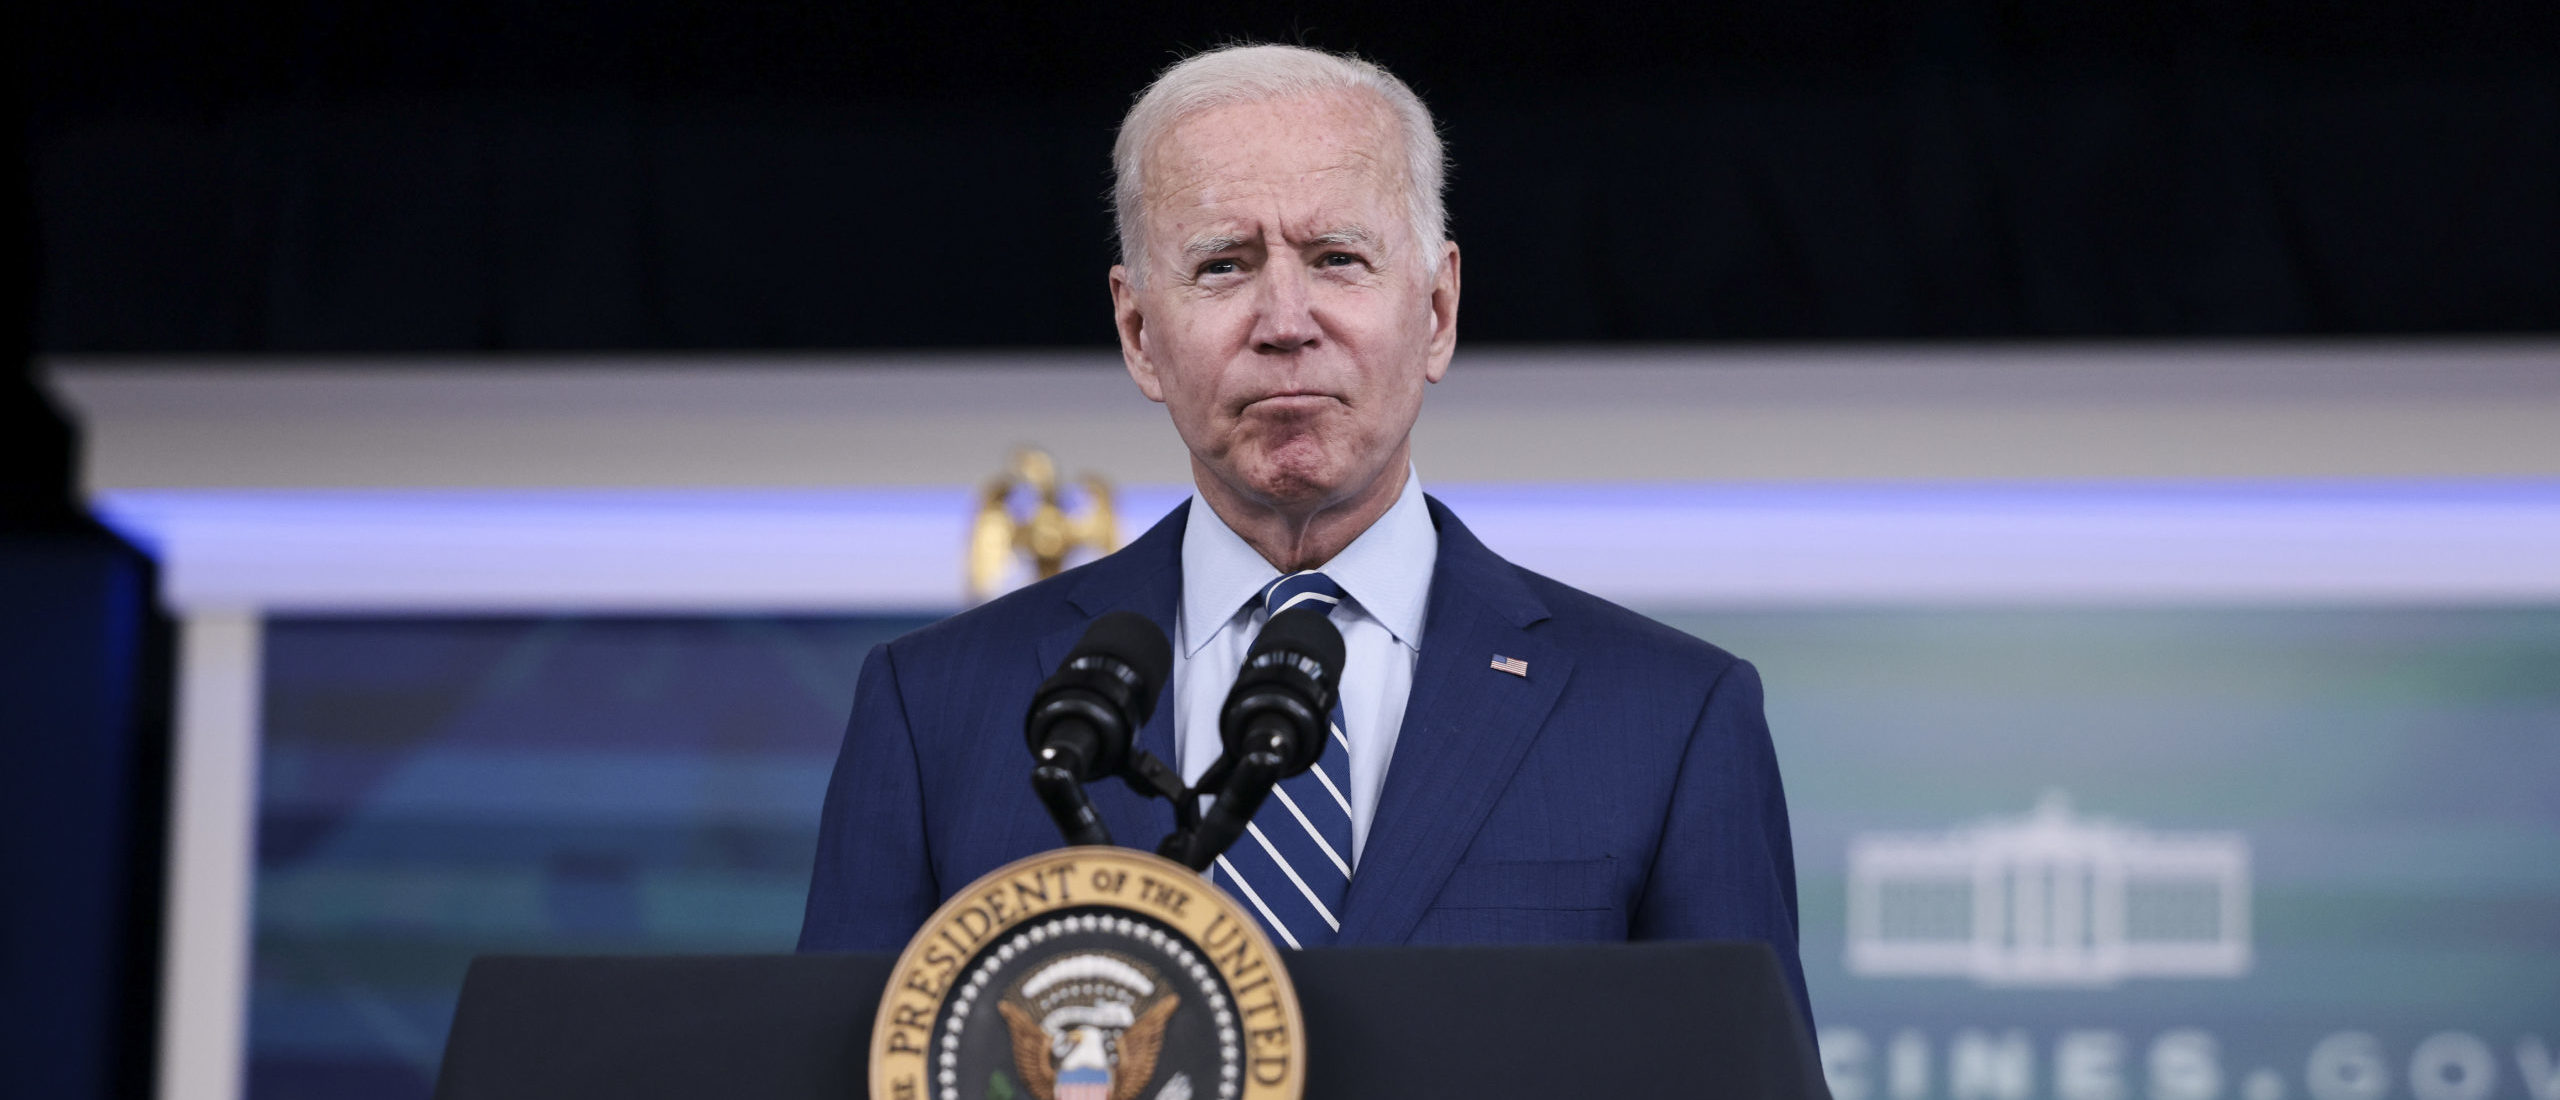 Biden Cancels Chicago Trip To Focus On Threatened Infrastructure Bill